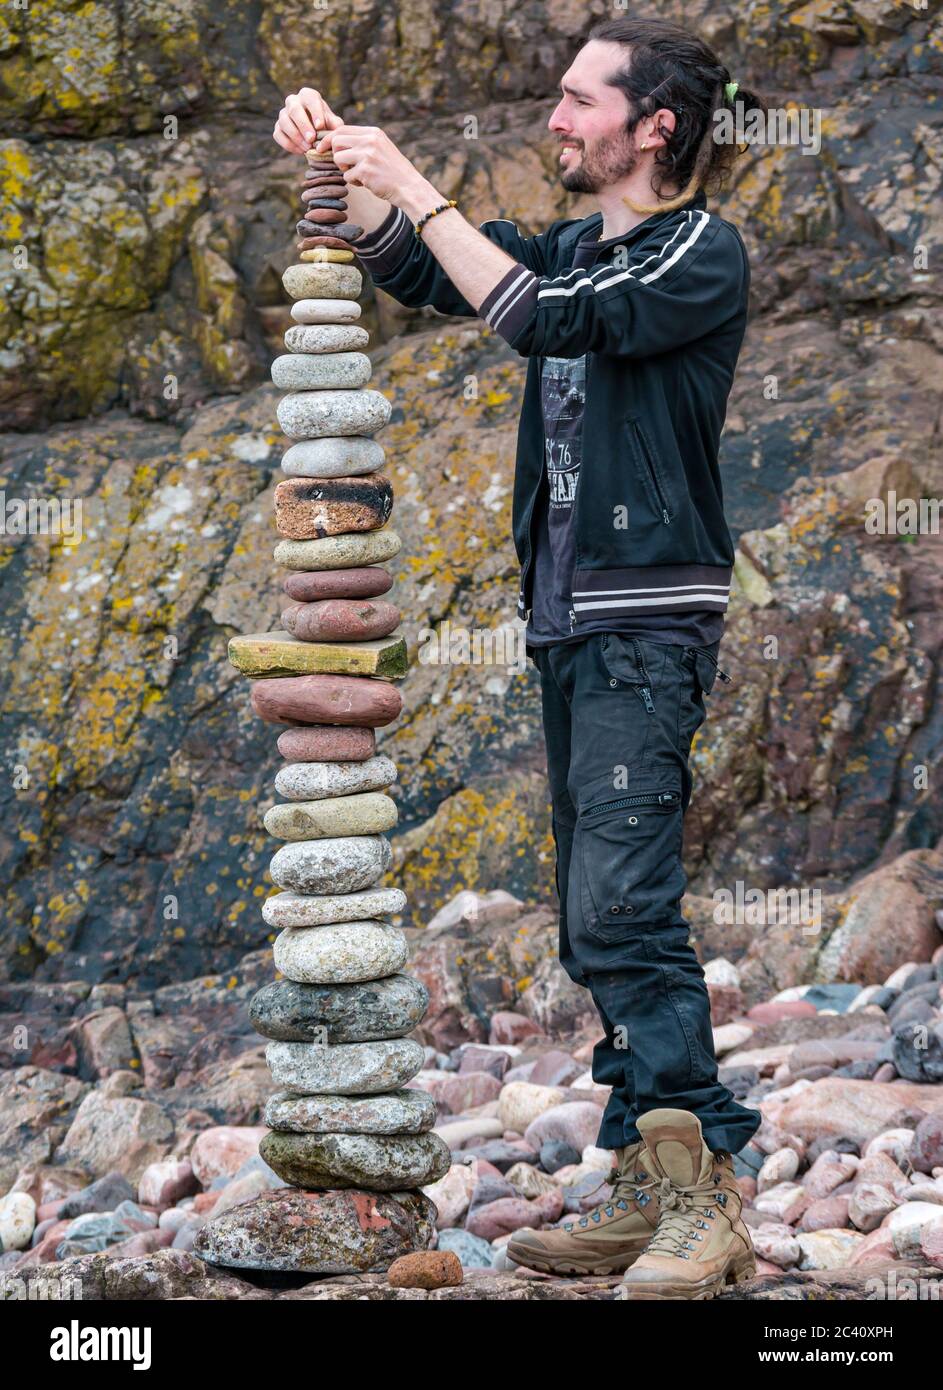 SP Ranza pierres d'équilibrage gerbeur, Championnat européen de pierre de superposition, Eye Cave Beach, Dunbar, East Lothian, Écosse, Royaume-Uni Banque D'Images